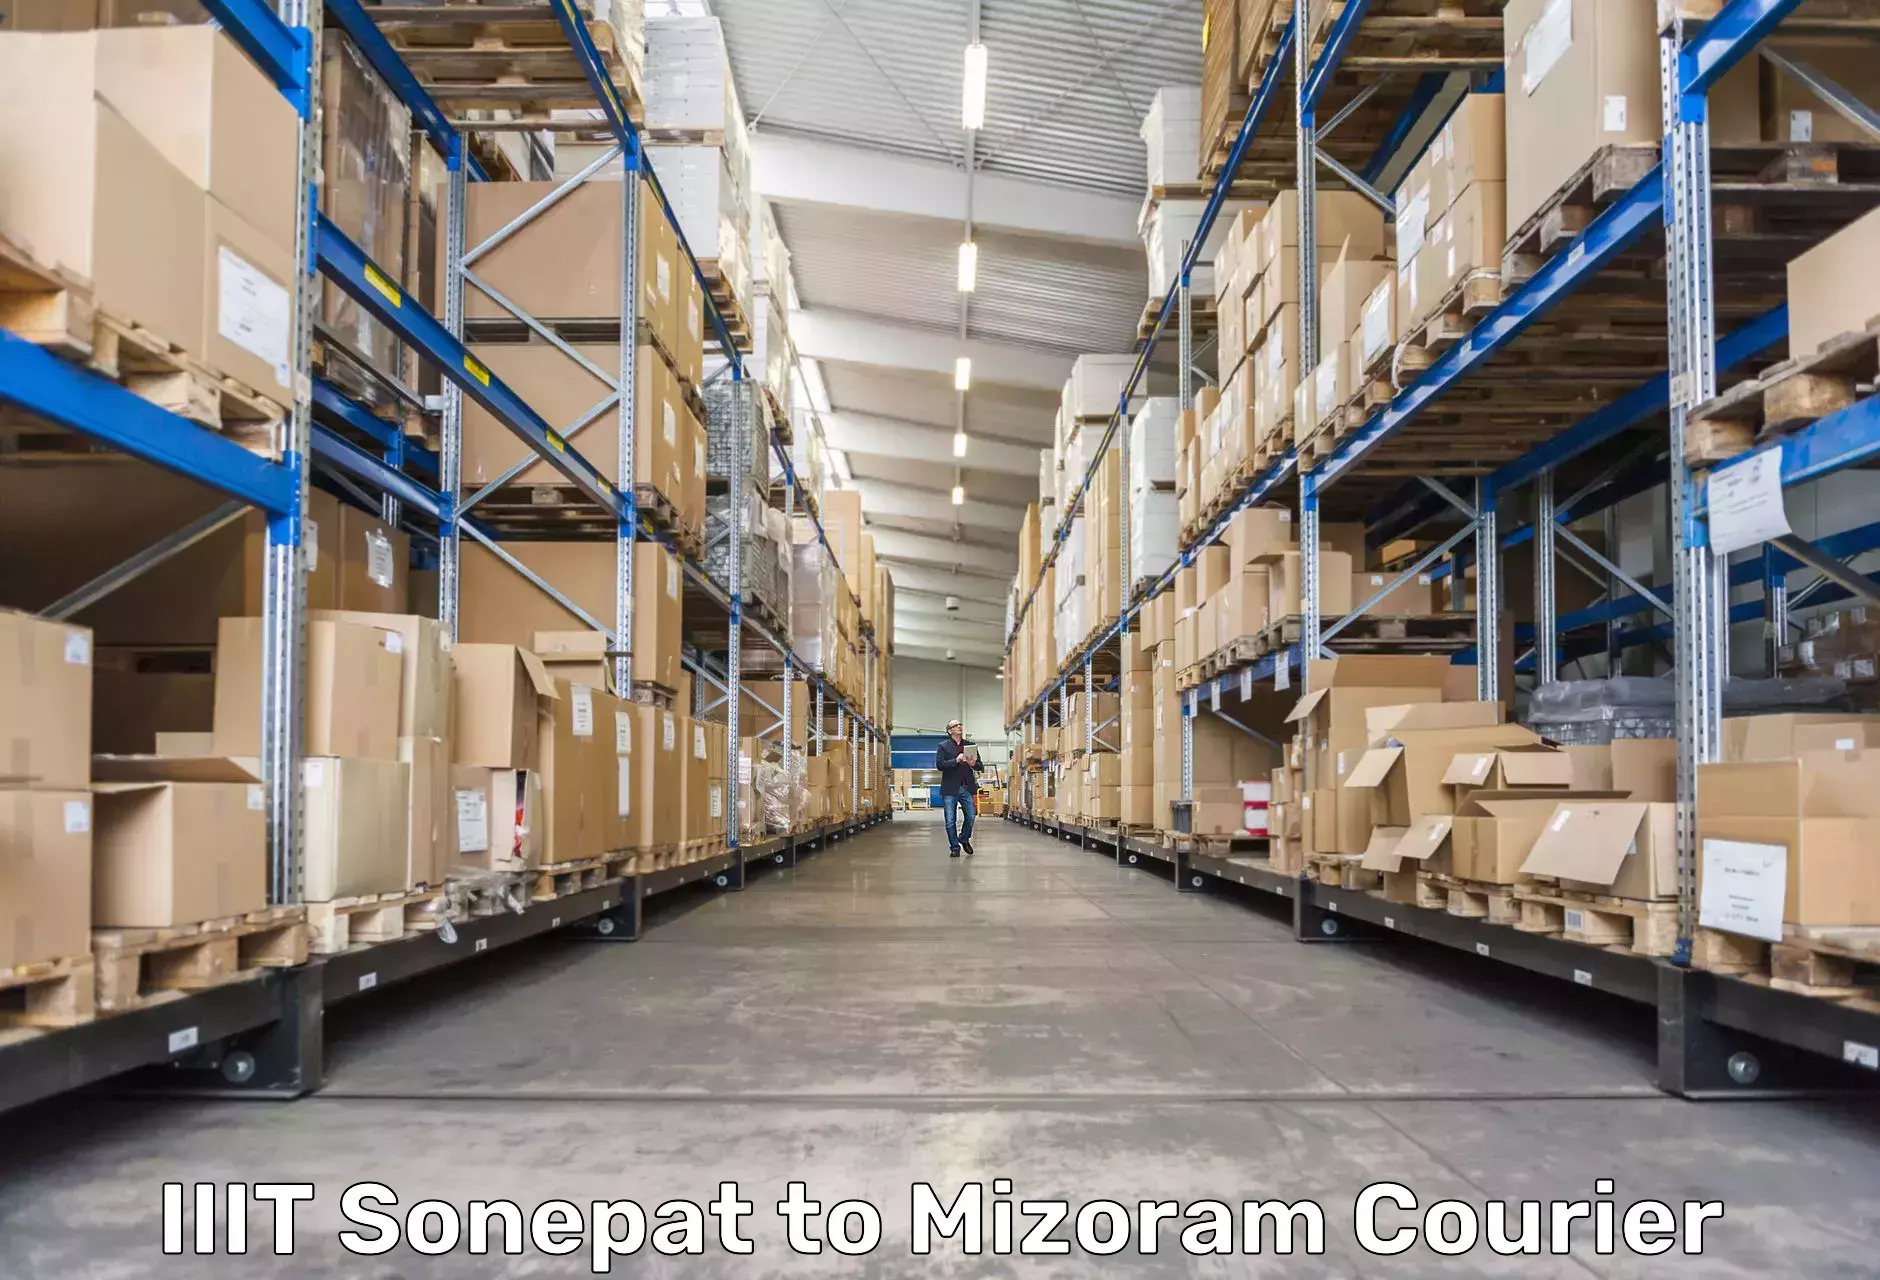 Global freight services IIIT Sonepat to Mizoram